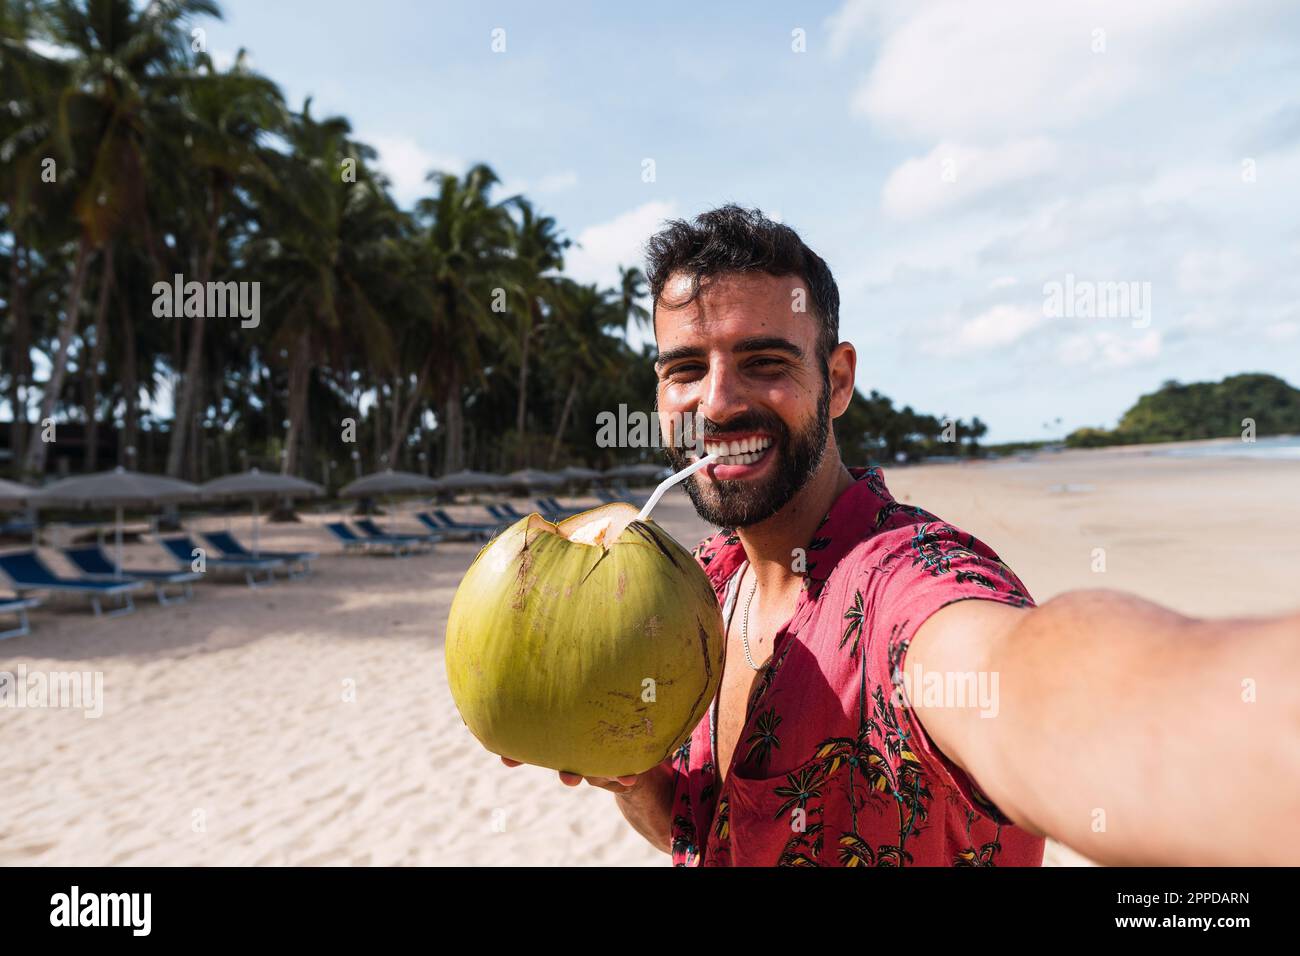 Un homme heureux qui boit de l'eau de noix de coco et qui prend le selfie à la plage Banque D'Images